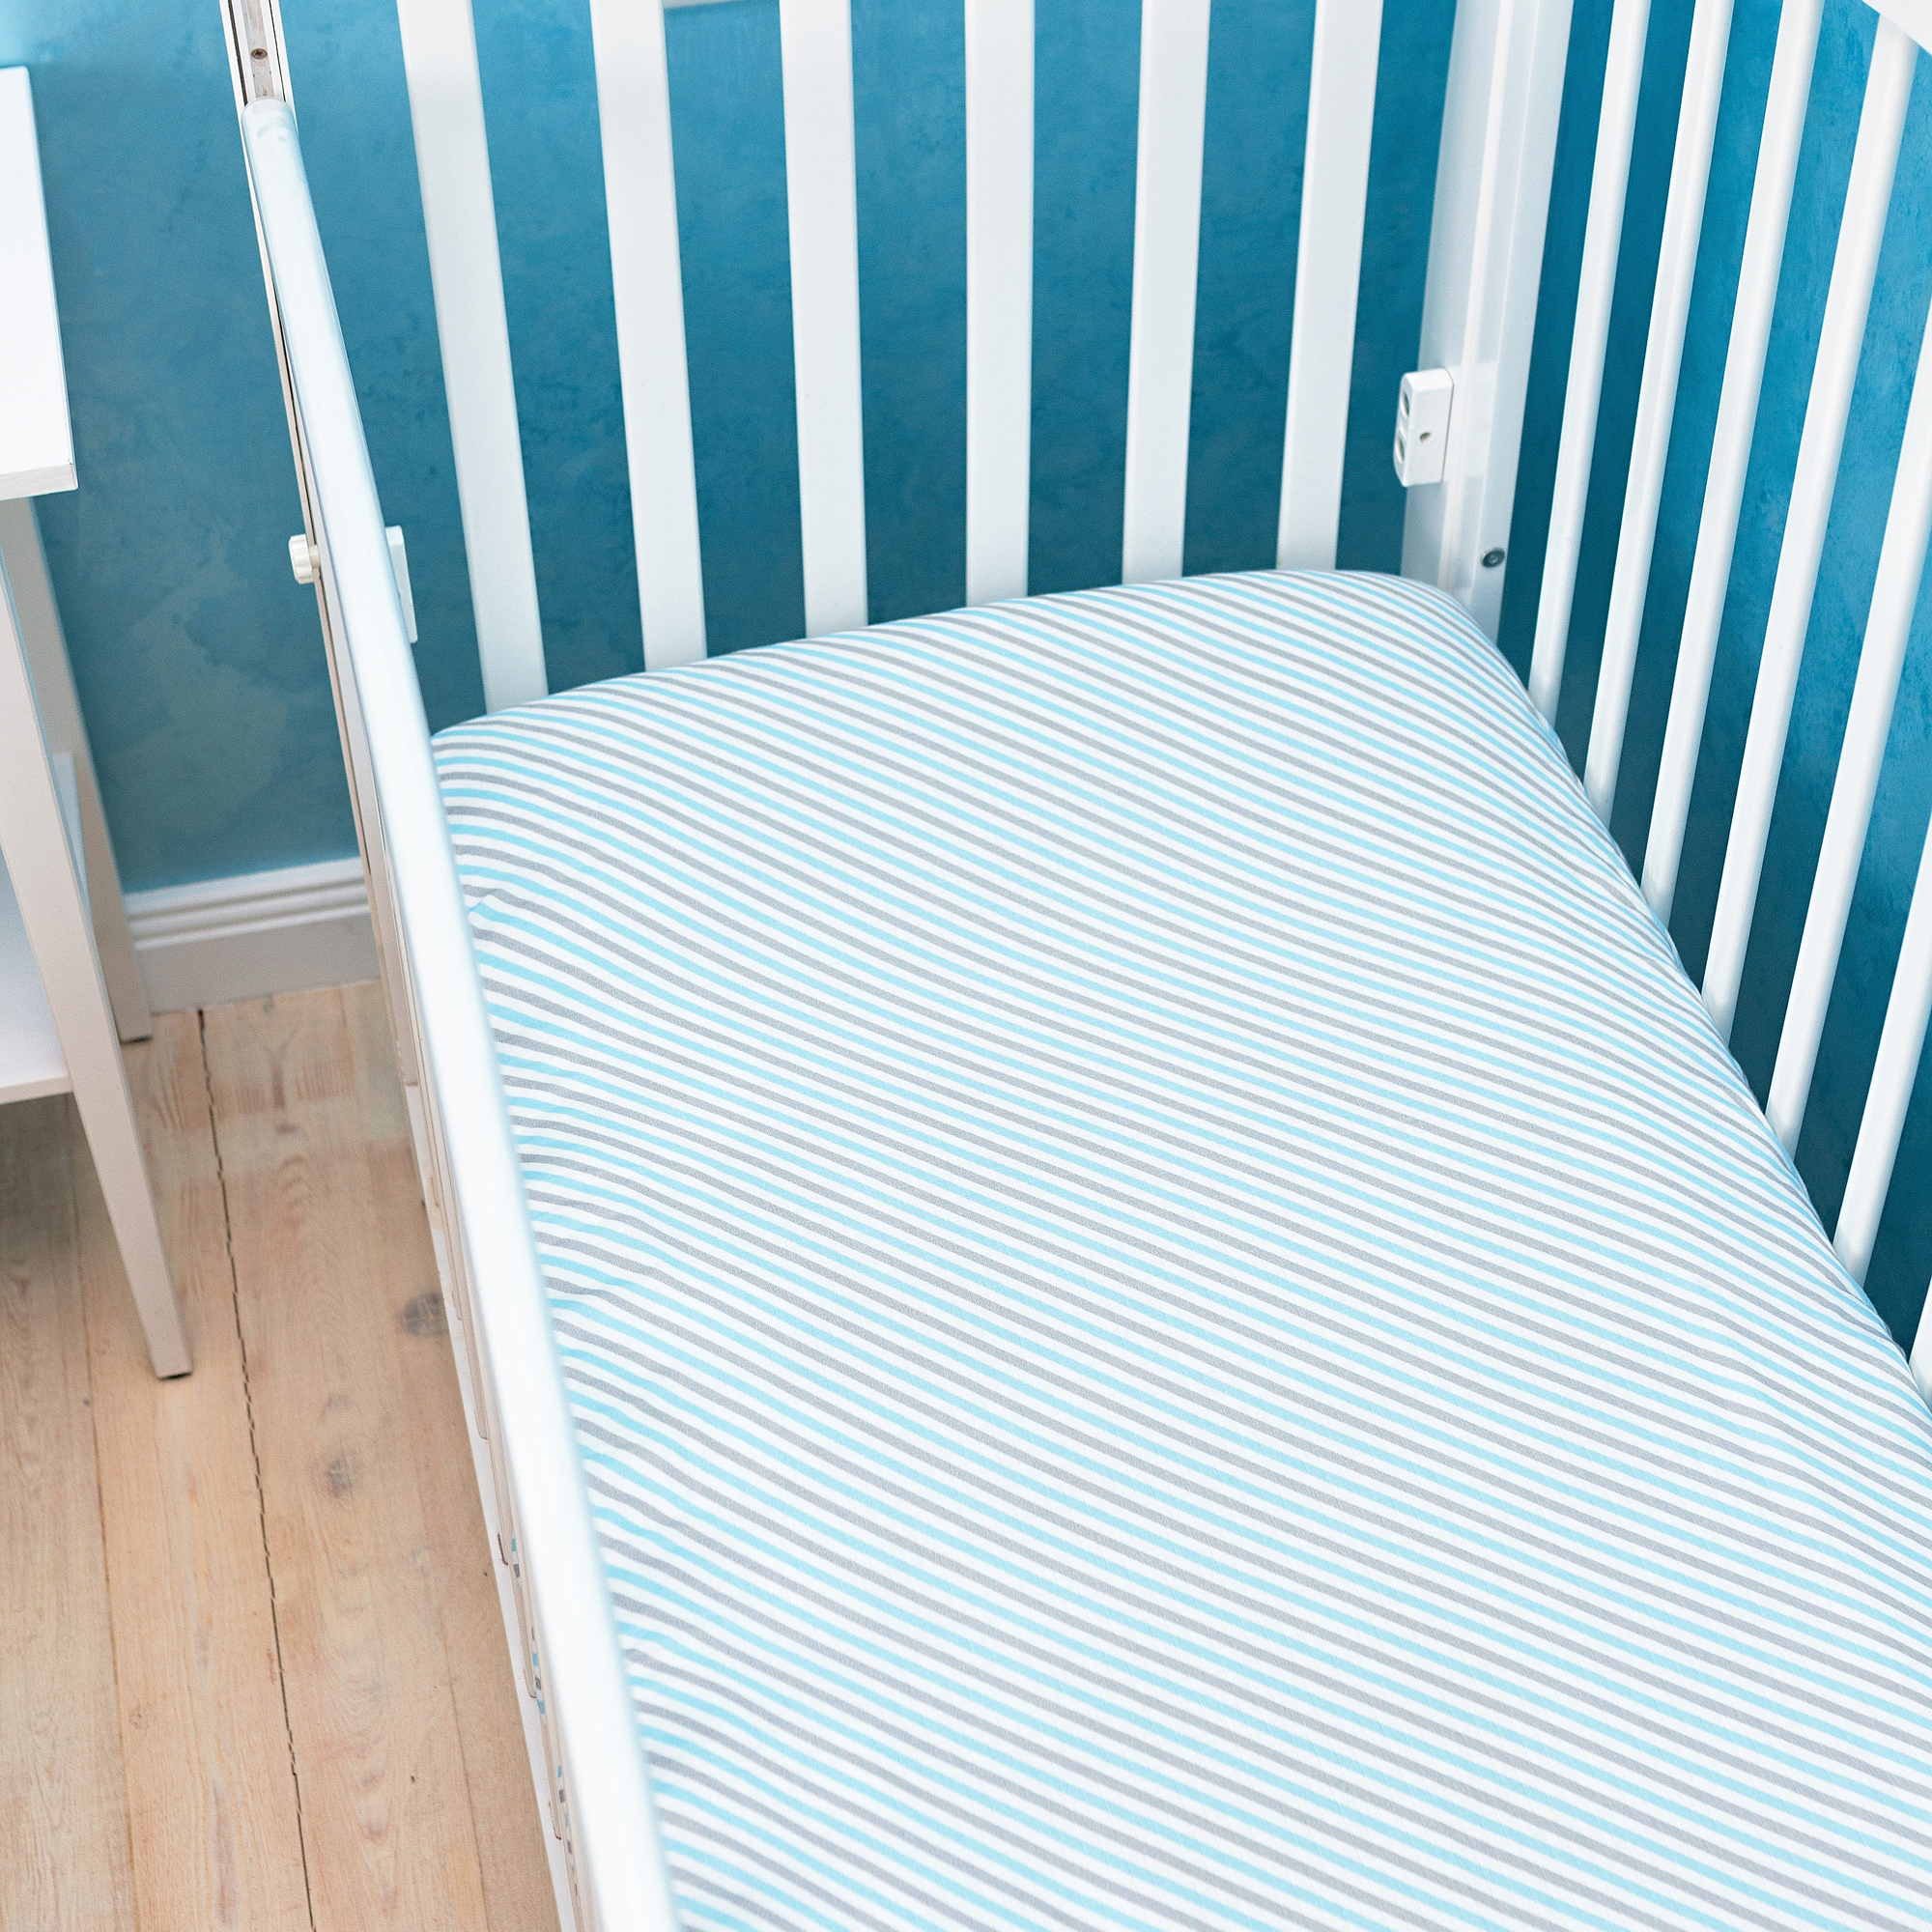 Простыня муслиновая на резинке для детской кроватки 60х120 Adam Stork Blue Stripes